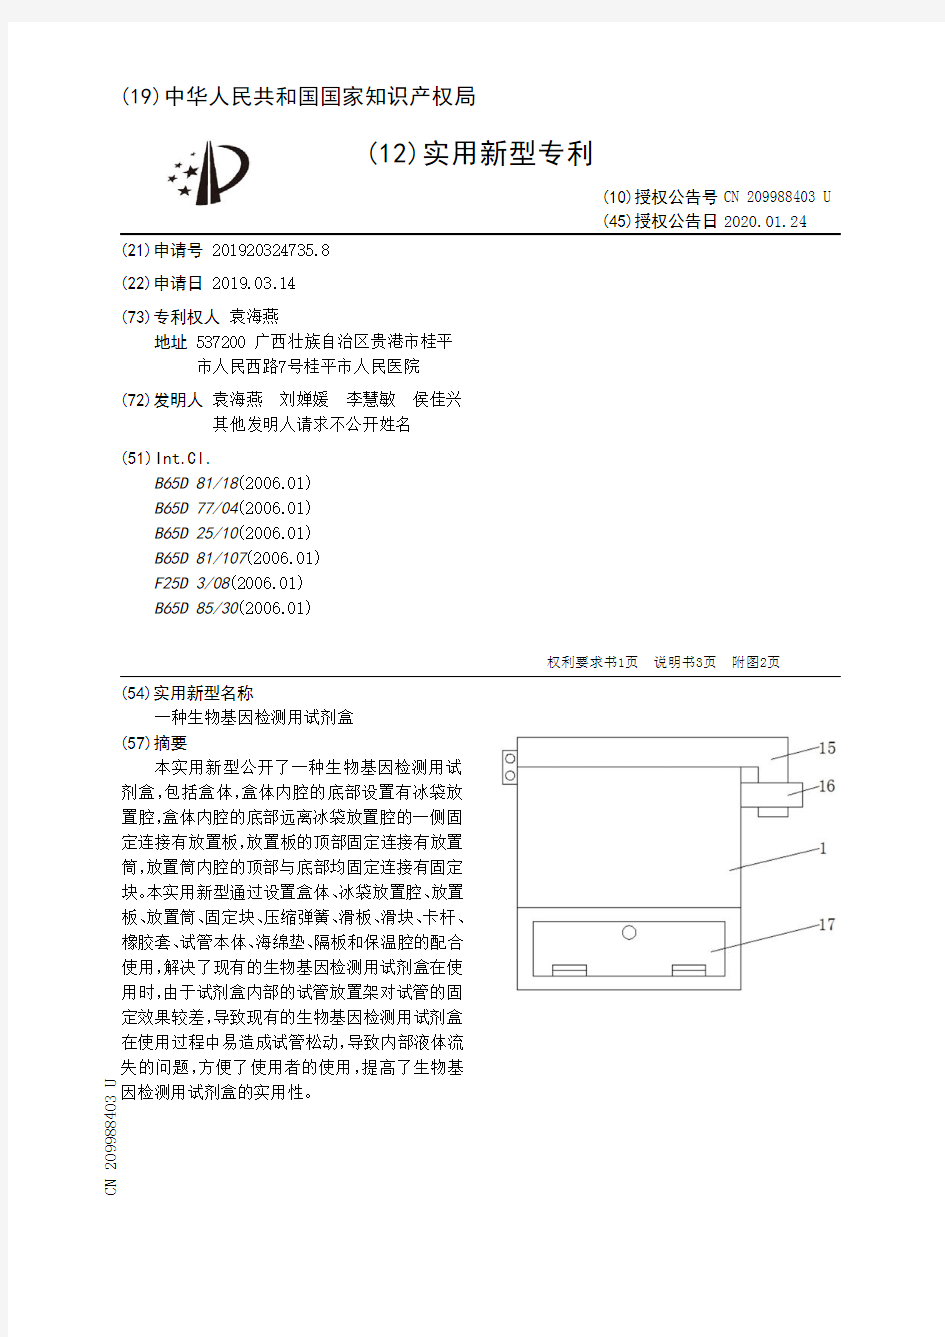 【CN209988403U】一种生物基因检测用试剂盒【专利】